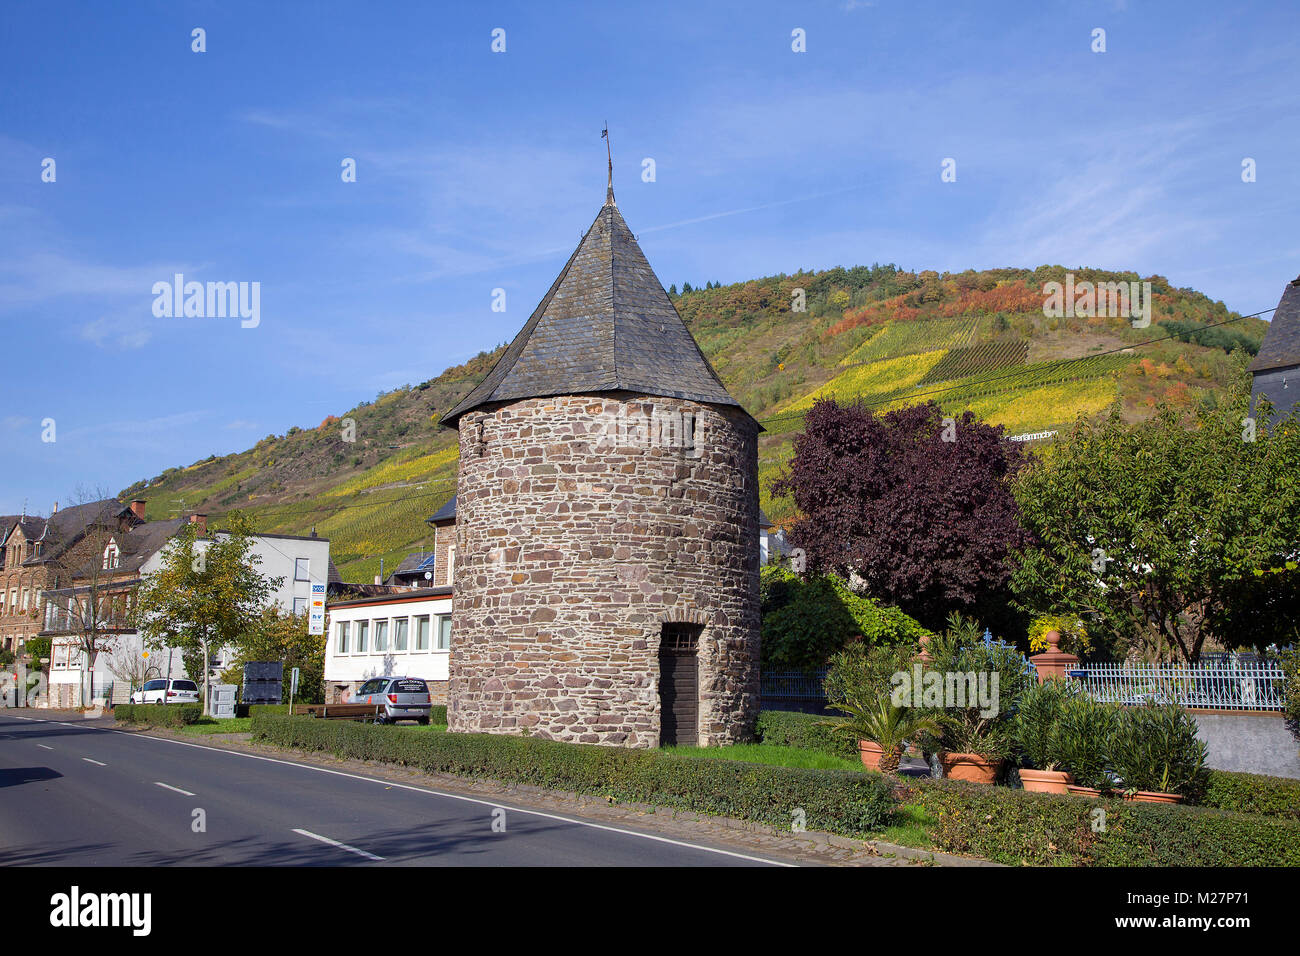 Histori torre di avvistamento medievale al villaggio del vino Ediger-Eller, villaggio della Mosella, Renania-Palatinato, Germania, Europa Foto Stock